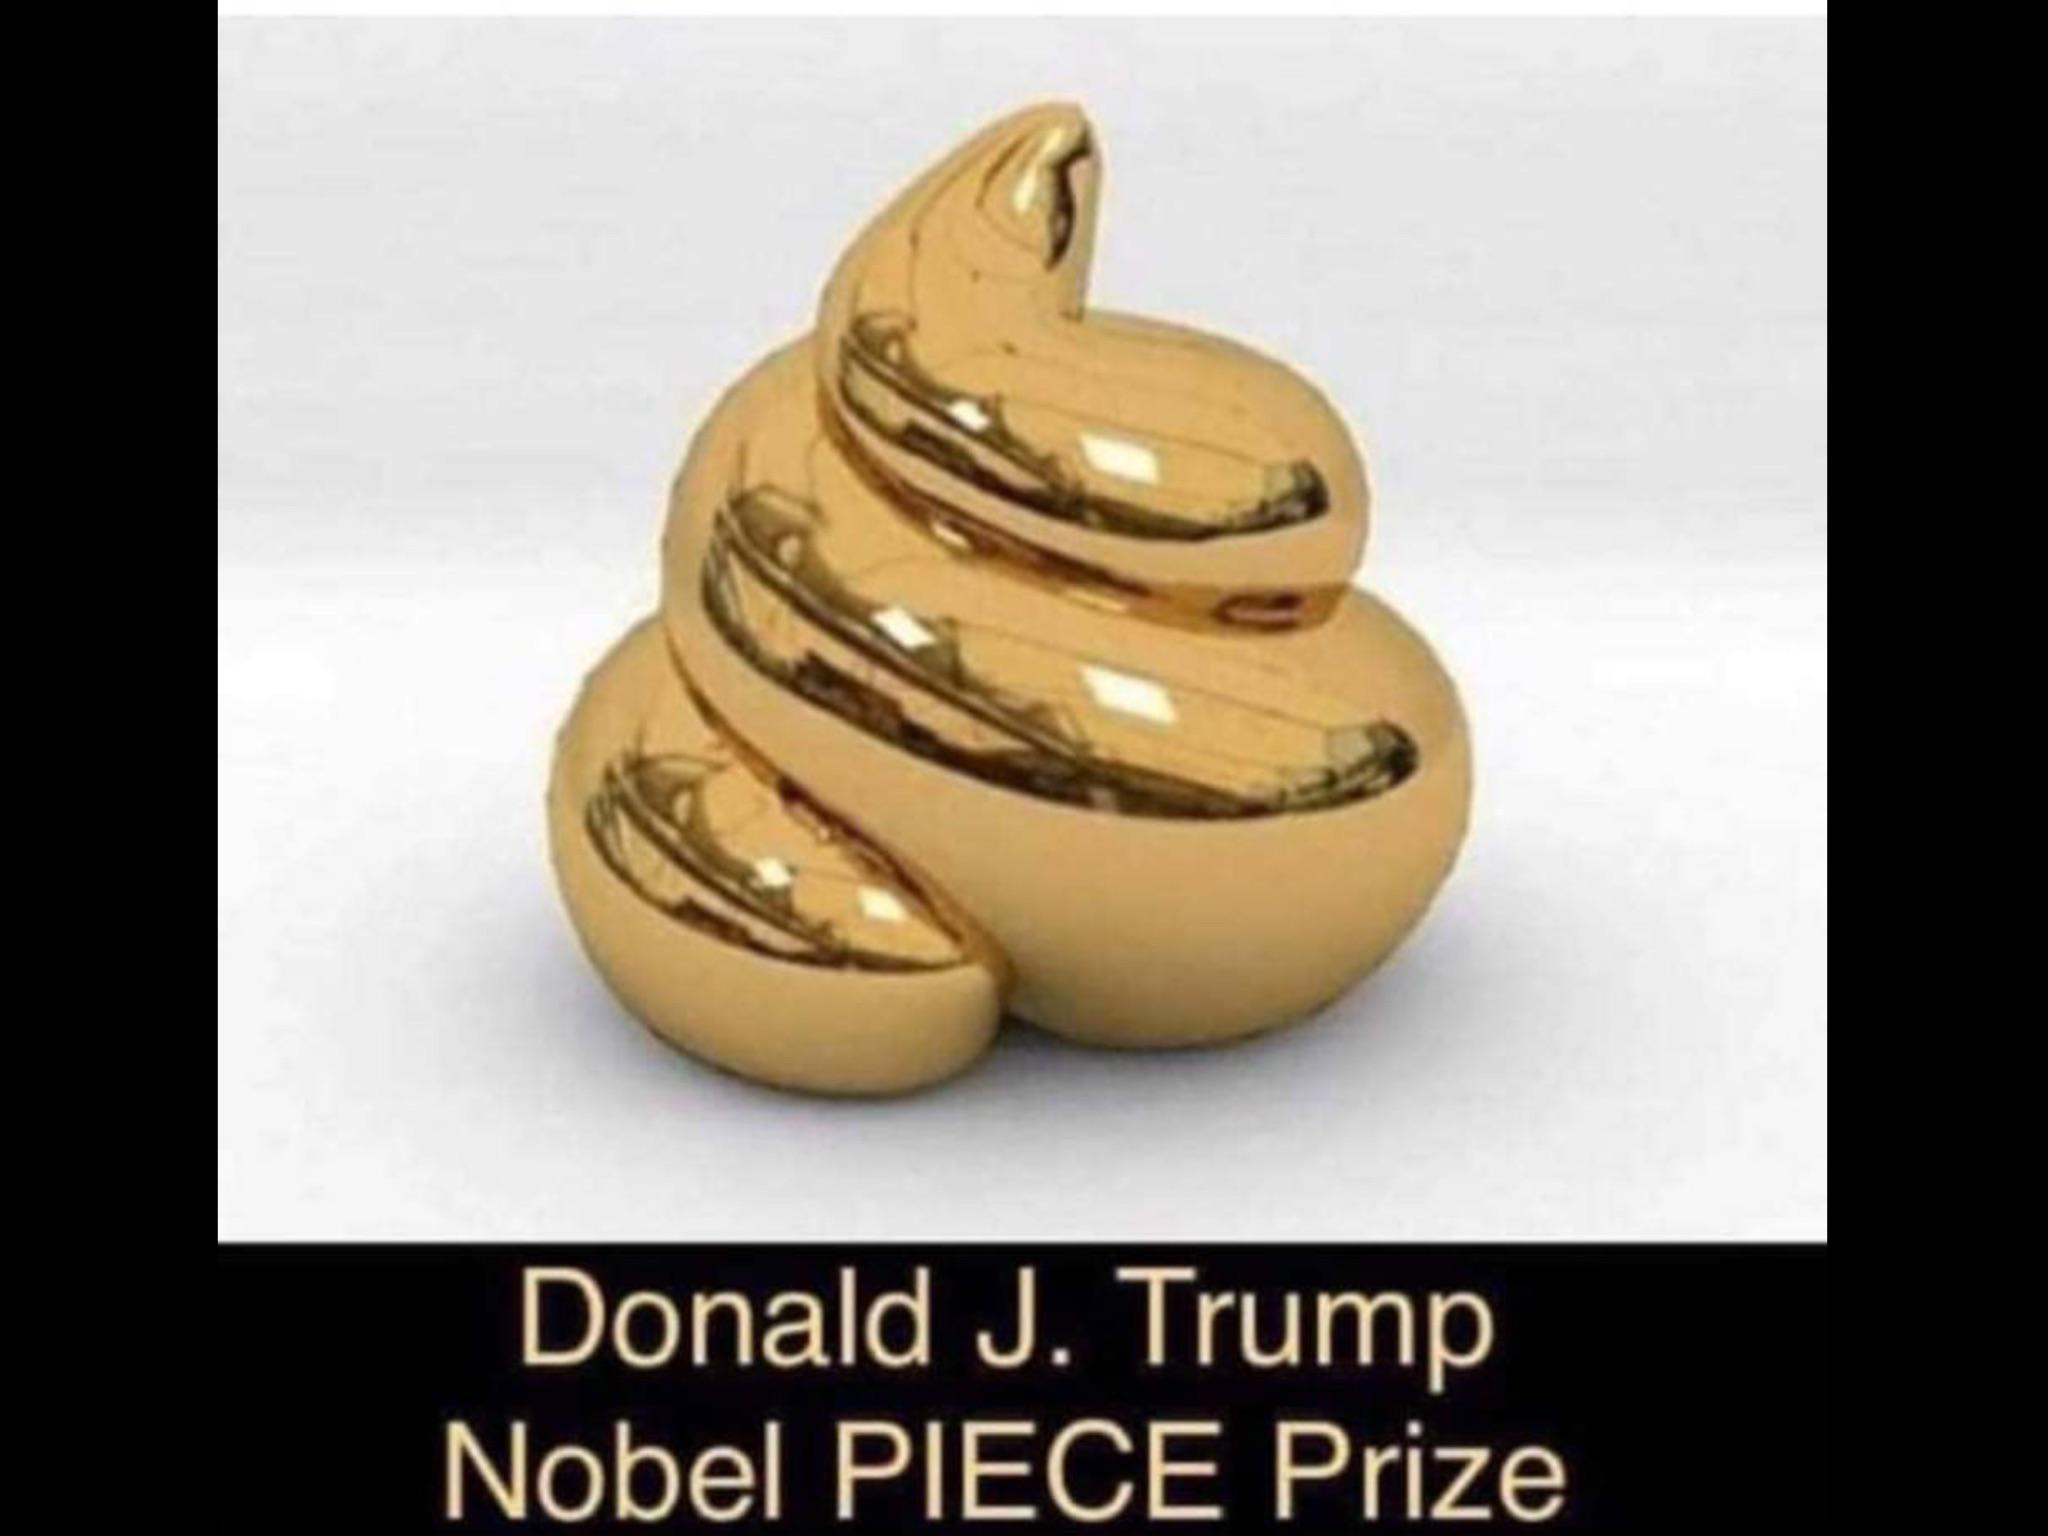 political political-memes political text: Donald J. Trump Nobel PIECE Prize 